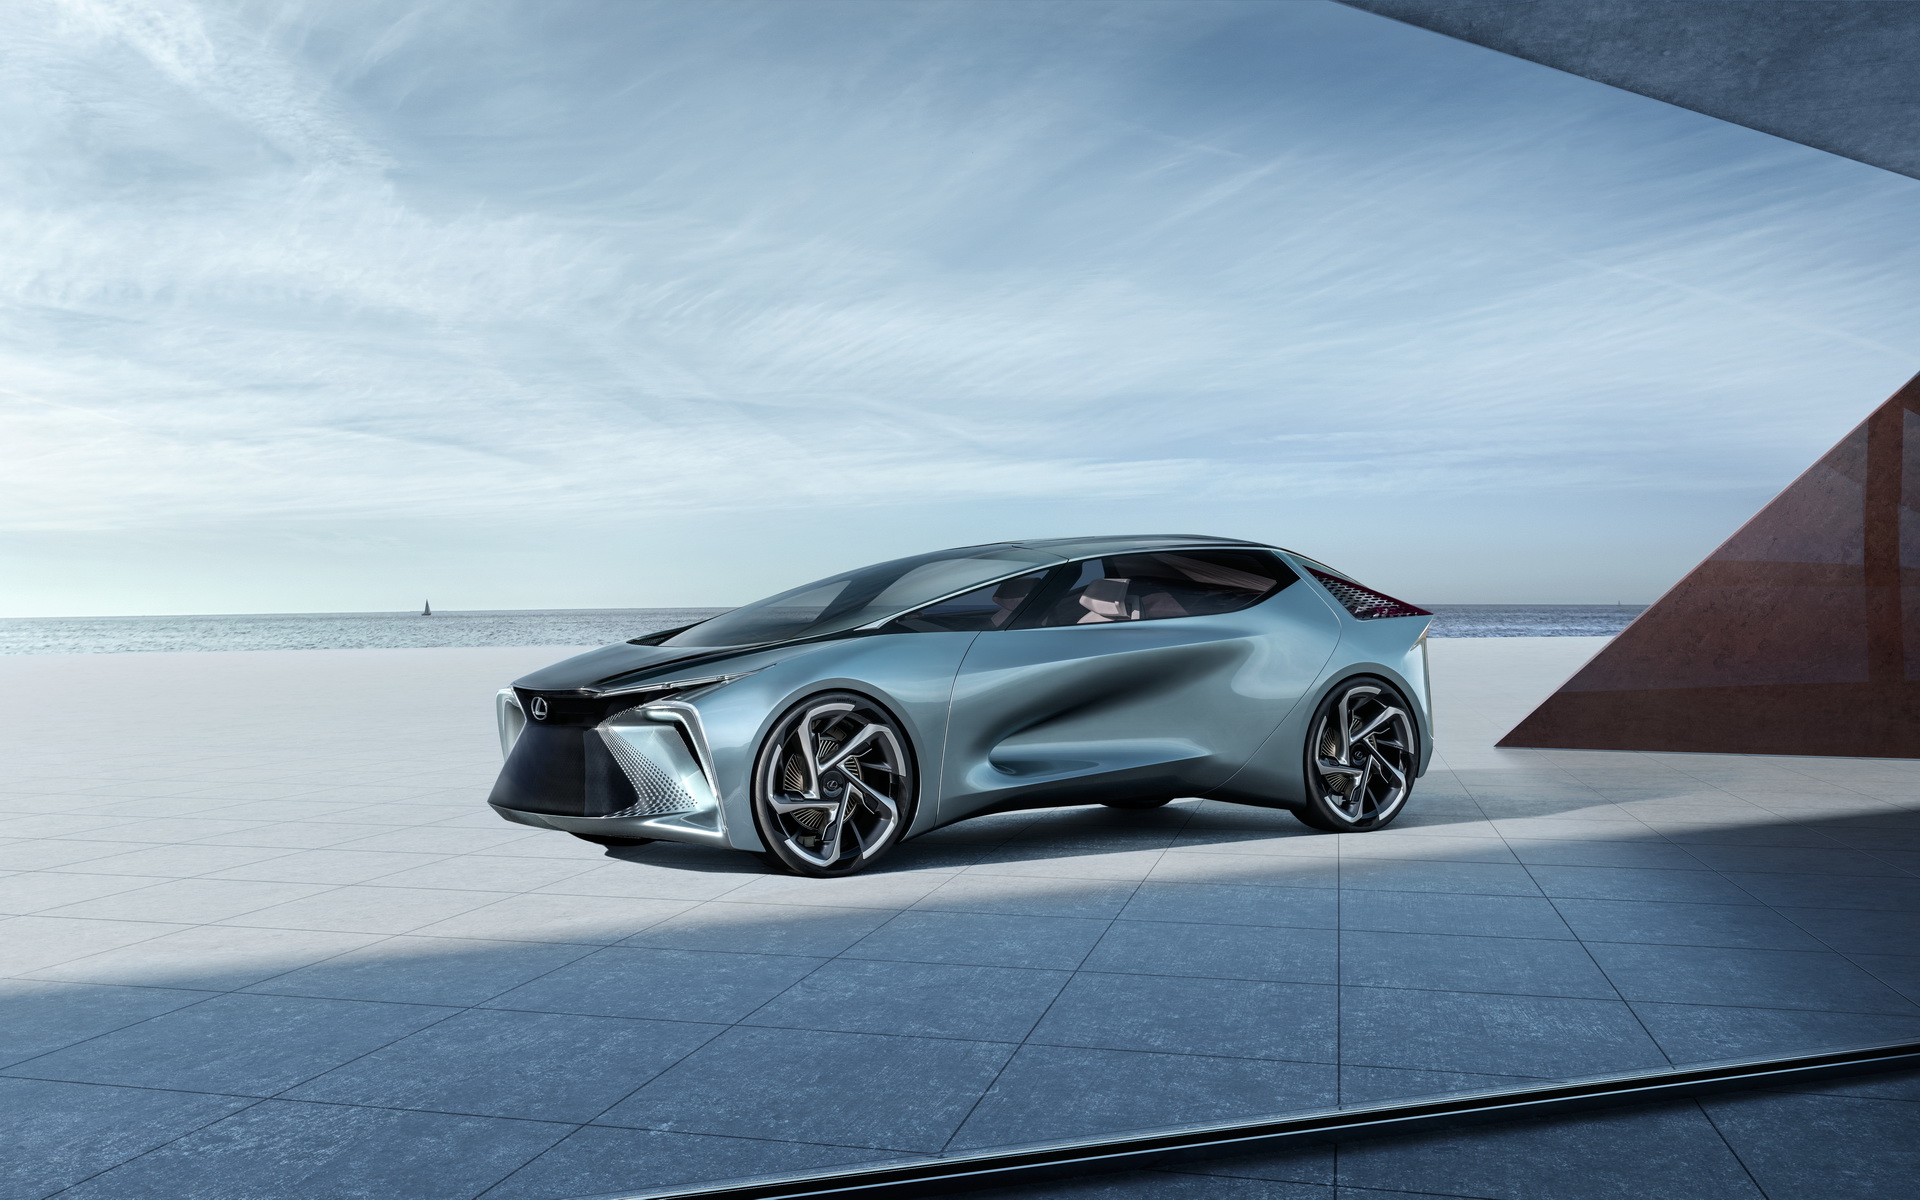 "بالصور" أبرز السيارات الجديدة القادمة في معرض جنيف للسيارات 2020 53